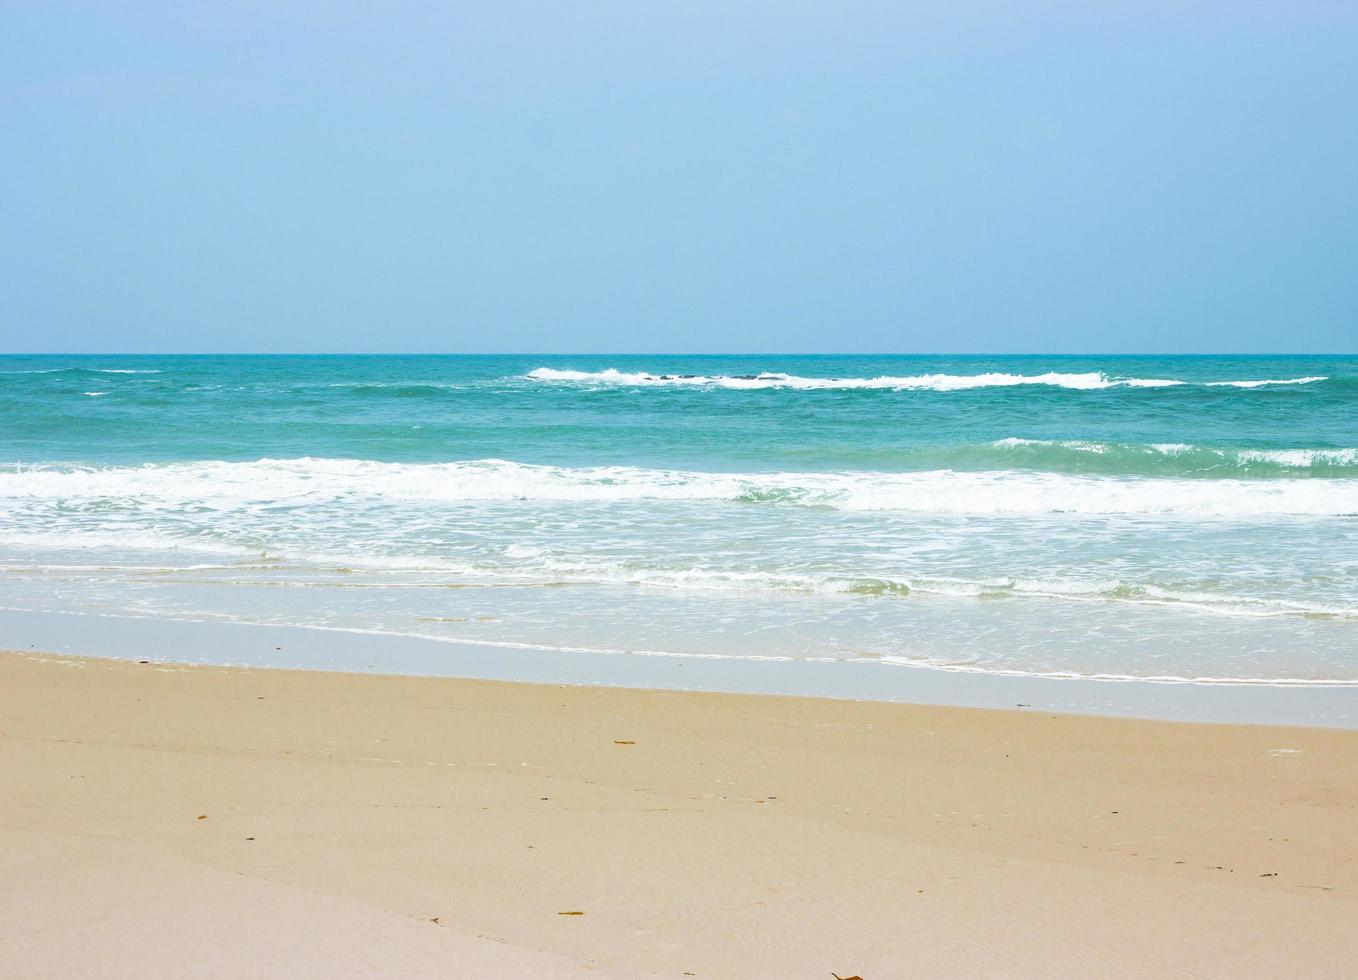 Ocean waves on beach with clear blue sky photo